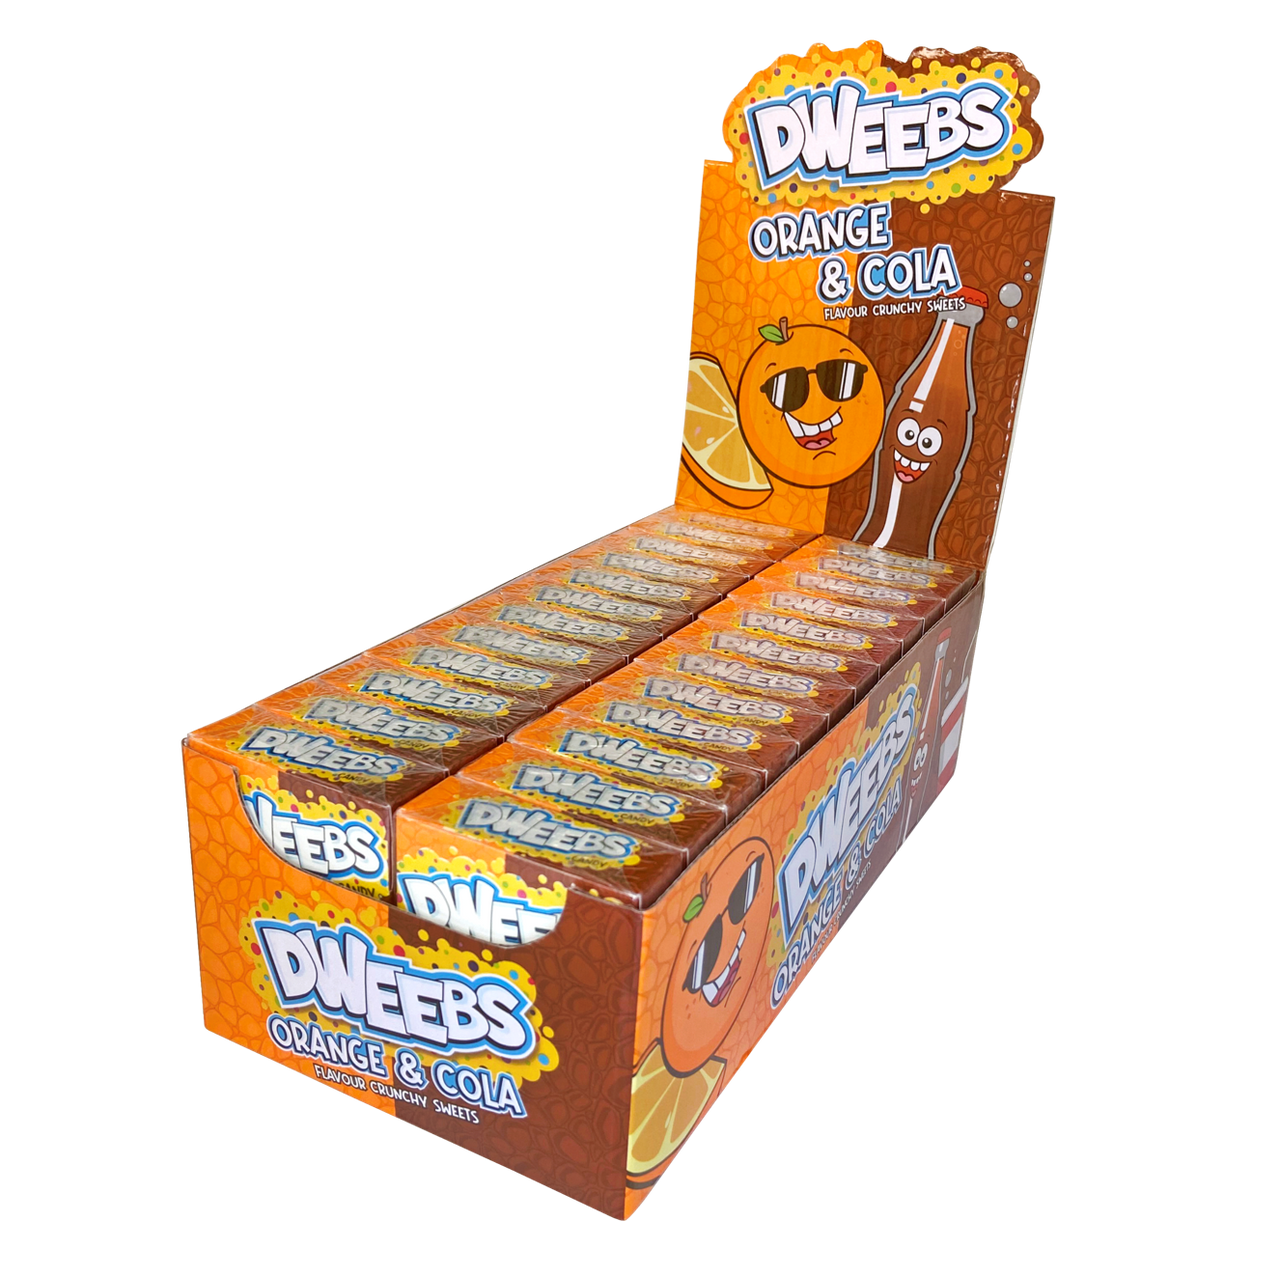 Dweebs - Orange & Cola - 12 x 24 x 45g (POR 37%)